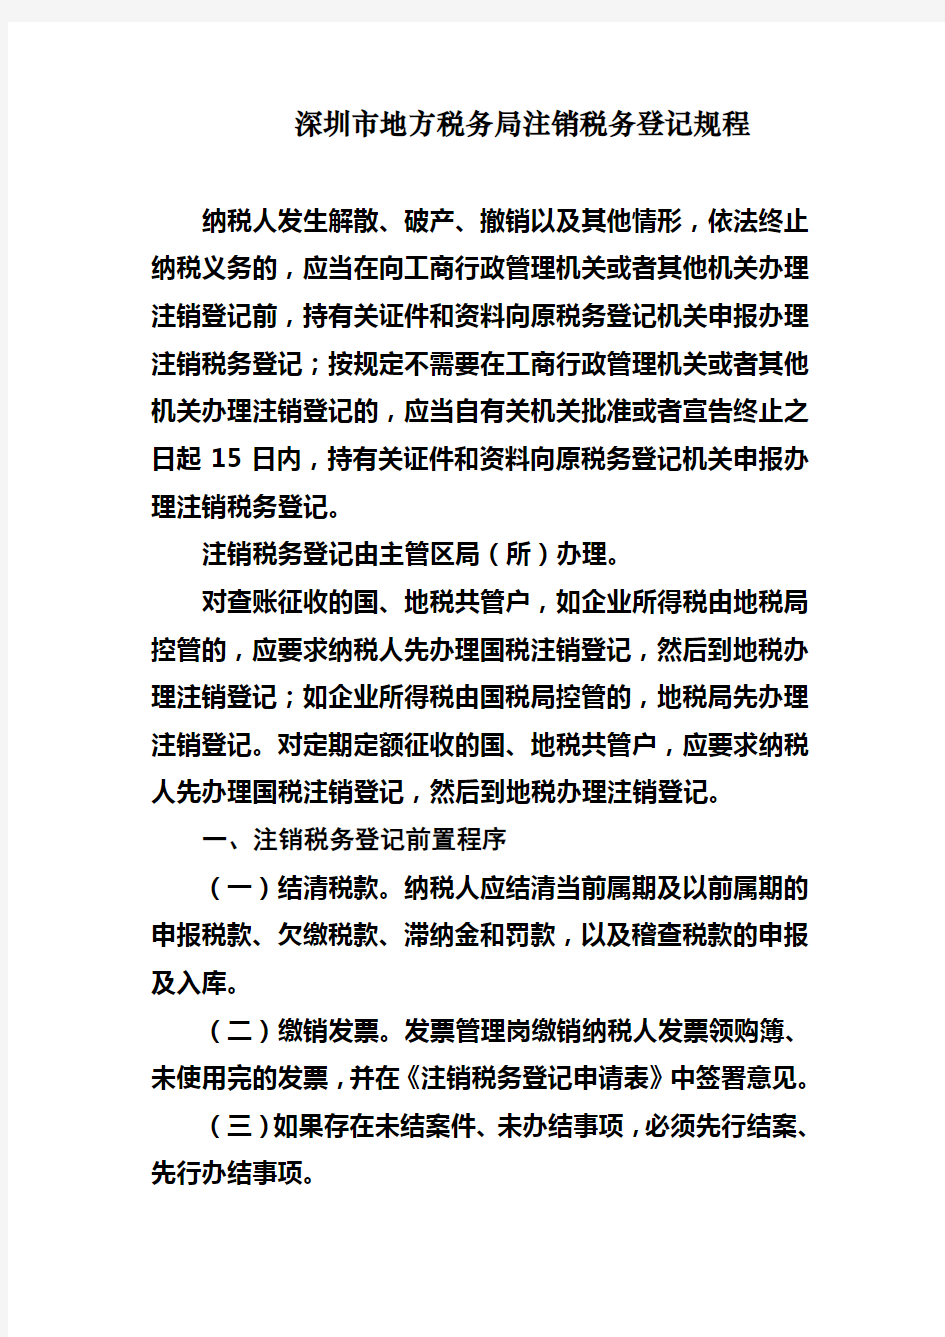 深圳市地税局注销税务登记规程